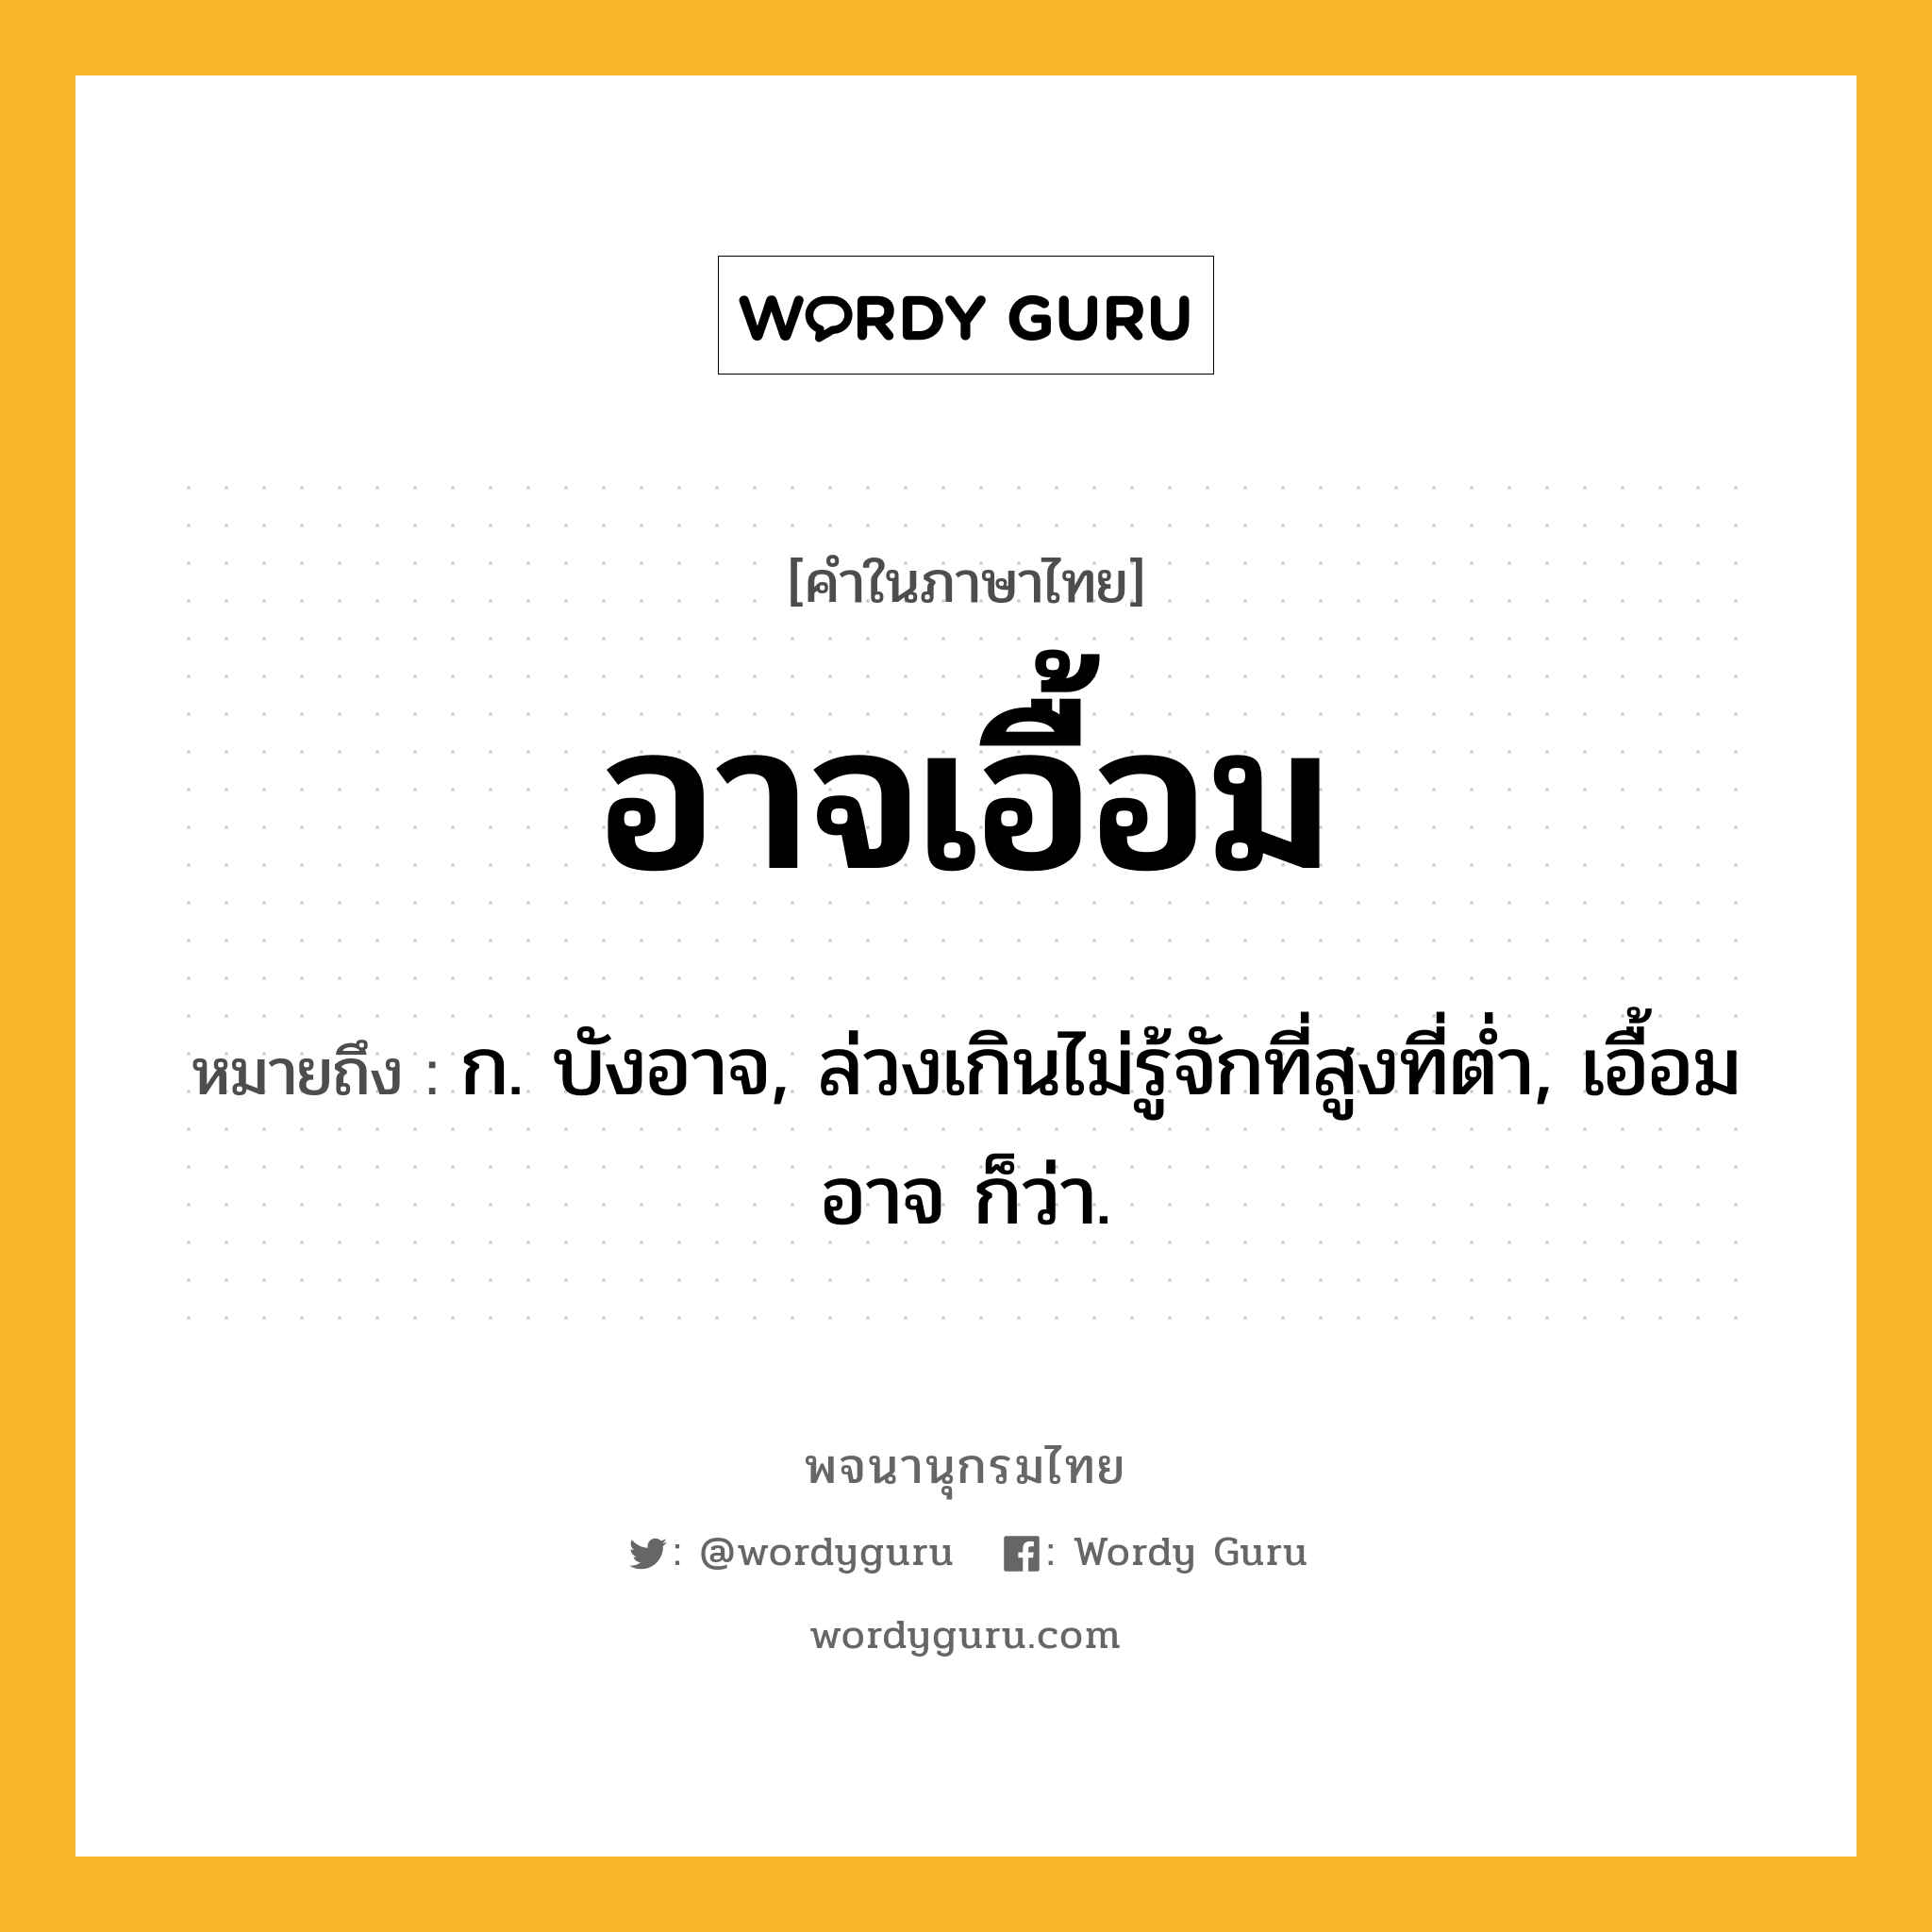 อาจเอื้อม หมายถึงอะไร?, คำในภาษาไทย อาจเอื้อม หมายถึง ก. บังอาจ, ล่วงเกินไม่รู้จักที่สูงที่ต่ำ, เอื้อมอาจ ก็ว่า.